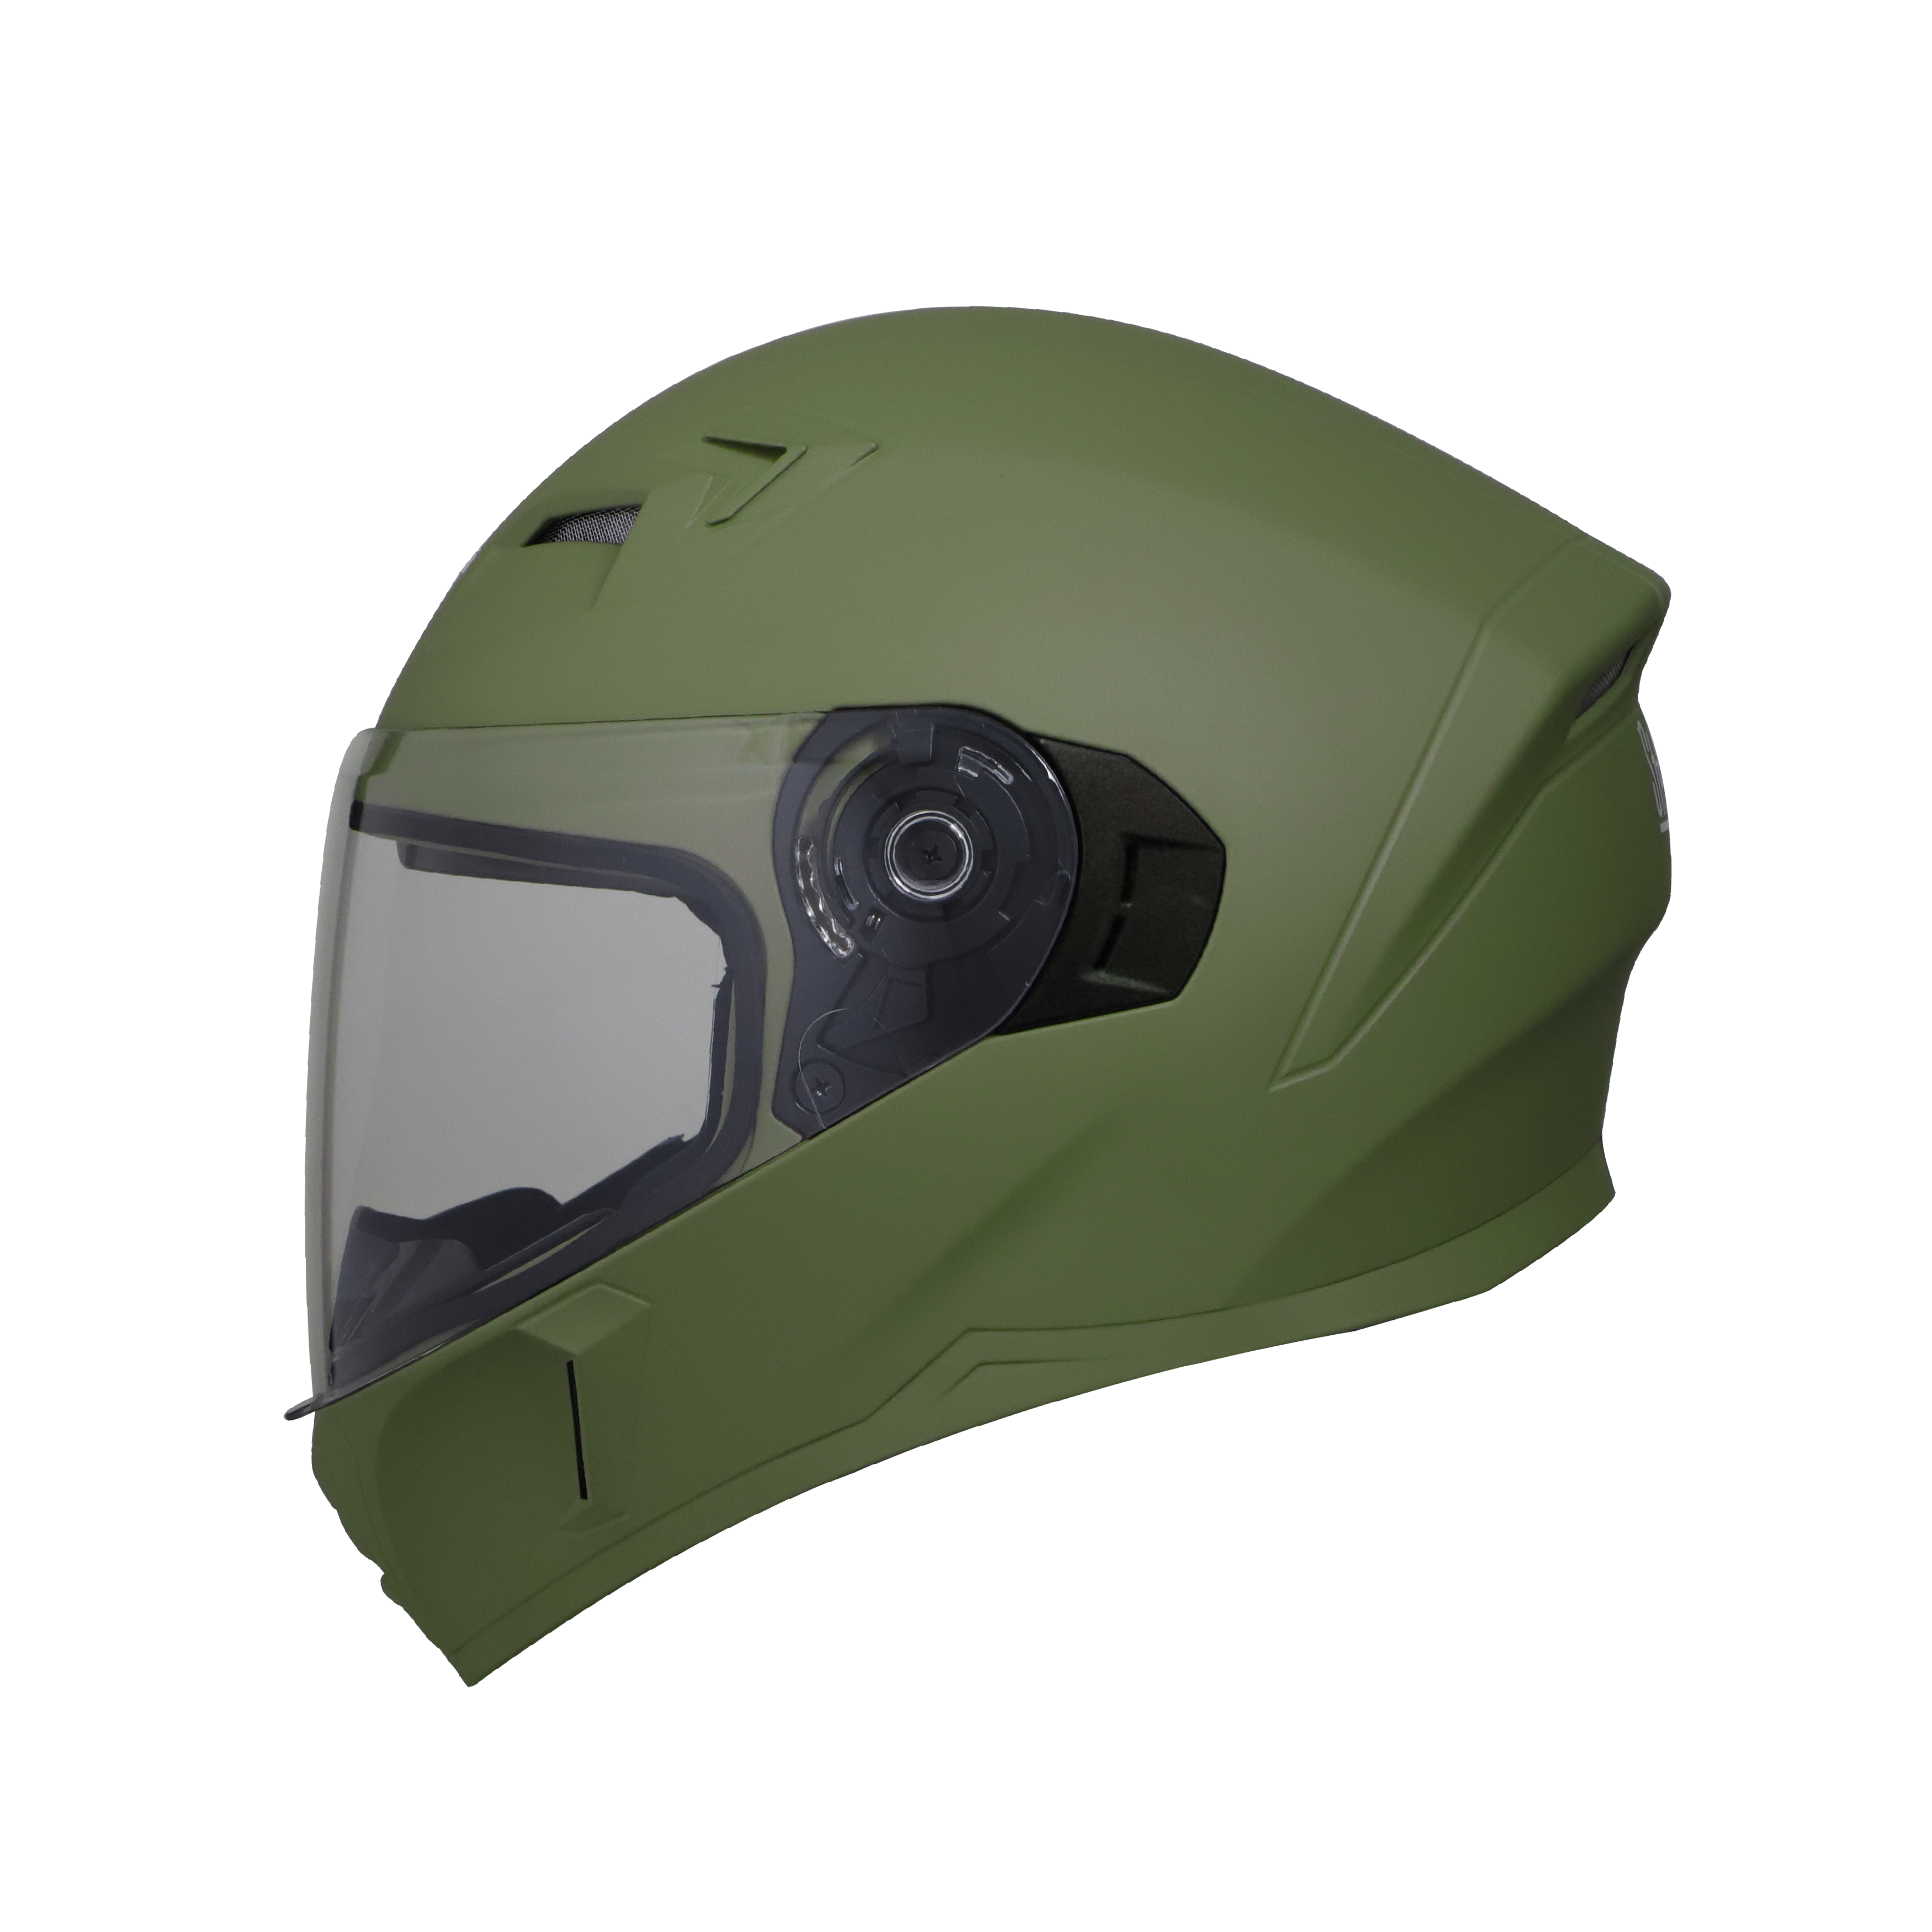 Steelbird SBA-21 GT Full Face ISI Certified Helmet (Matt Battle Green With Clear Visor)